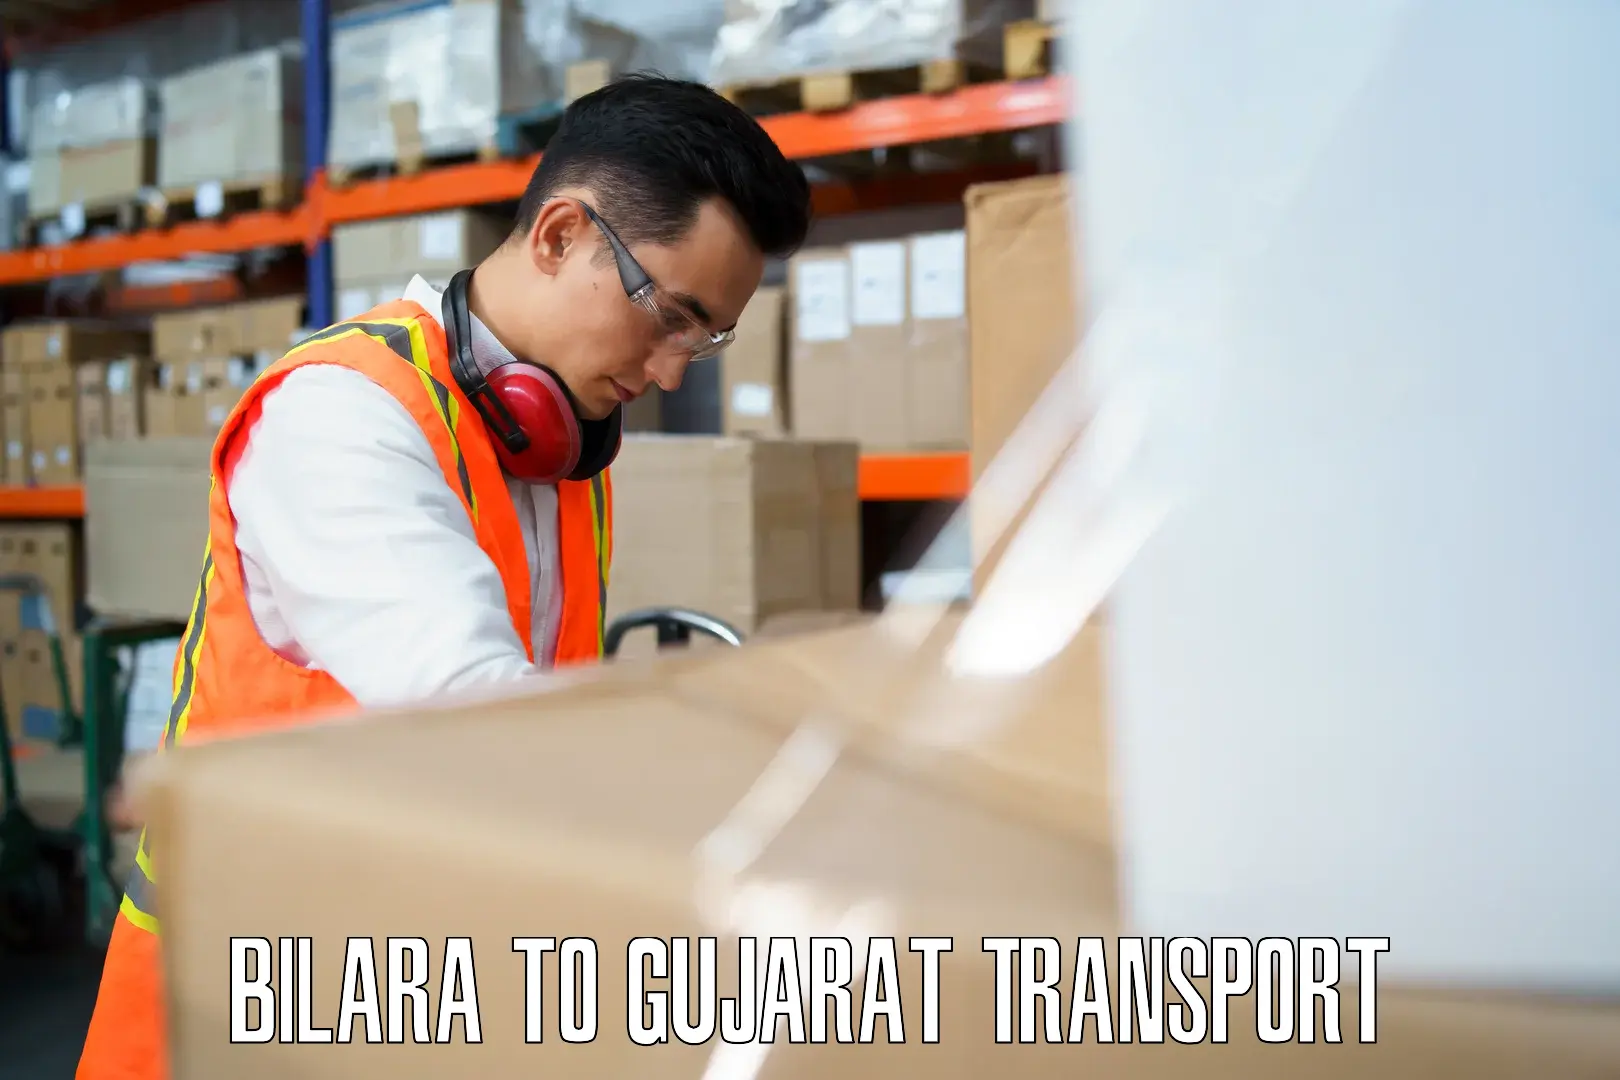 Delivery service Bilara to Gujarat